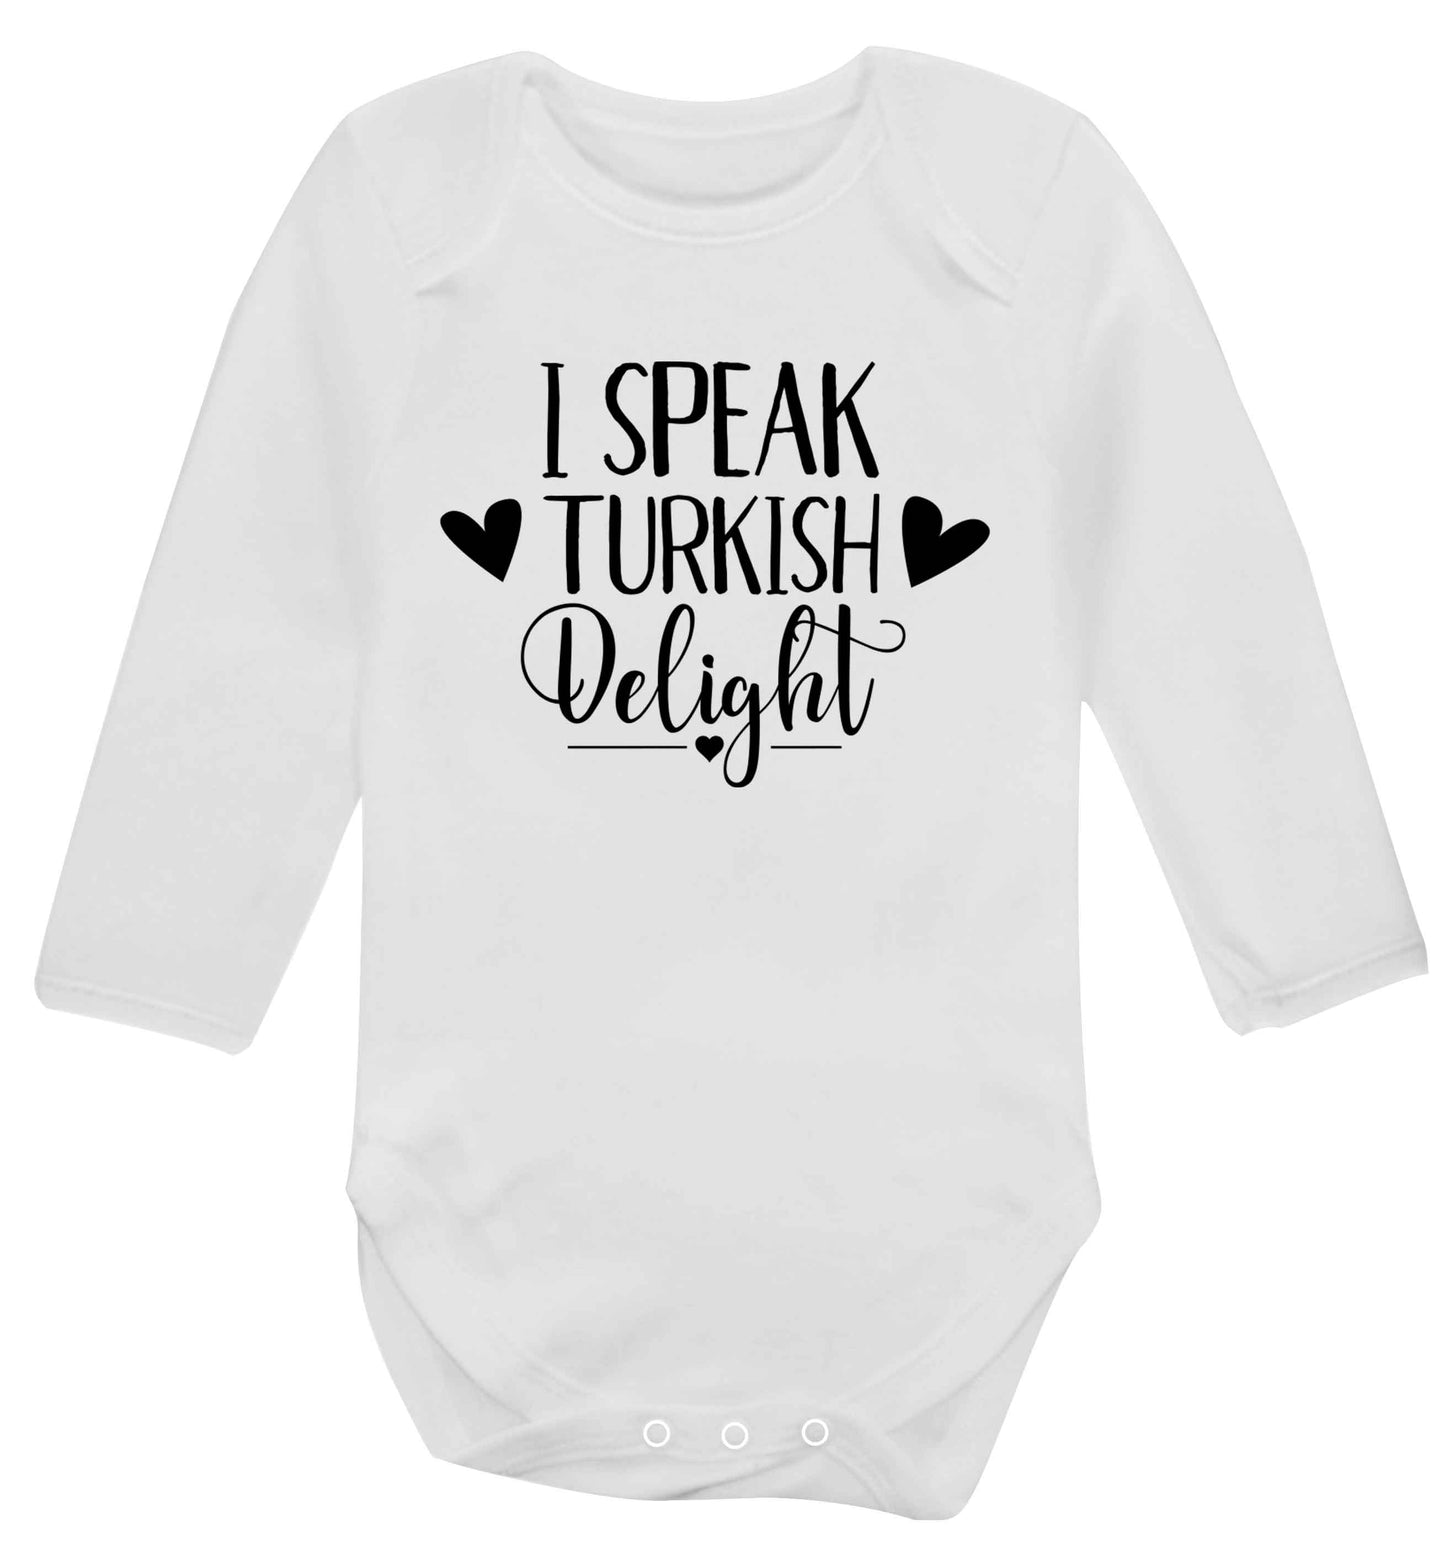 I speak turkish...delight Baby Vest long sleeved white 6-12 months